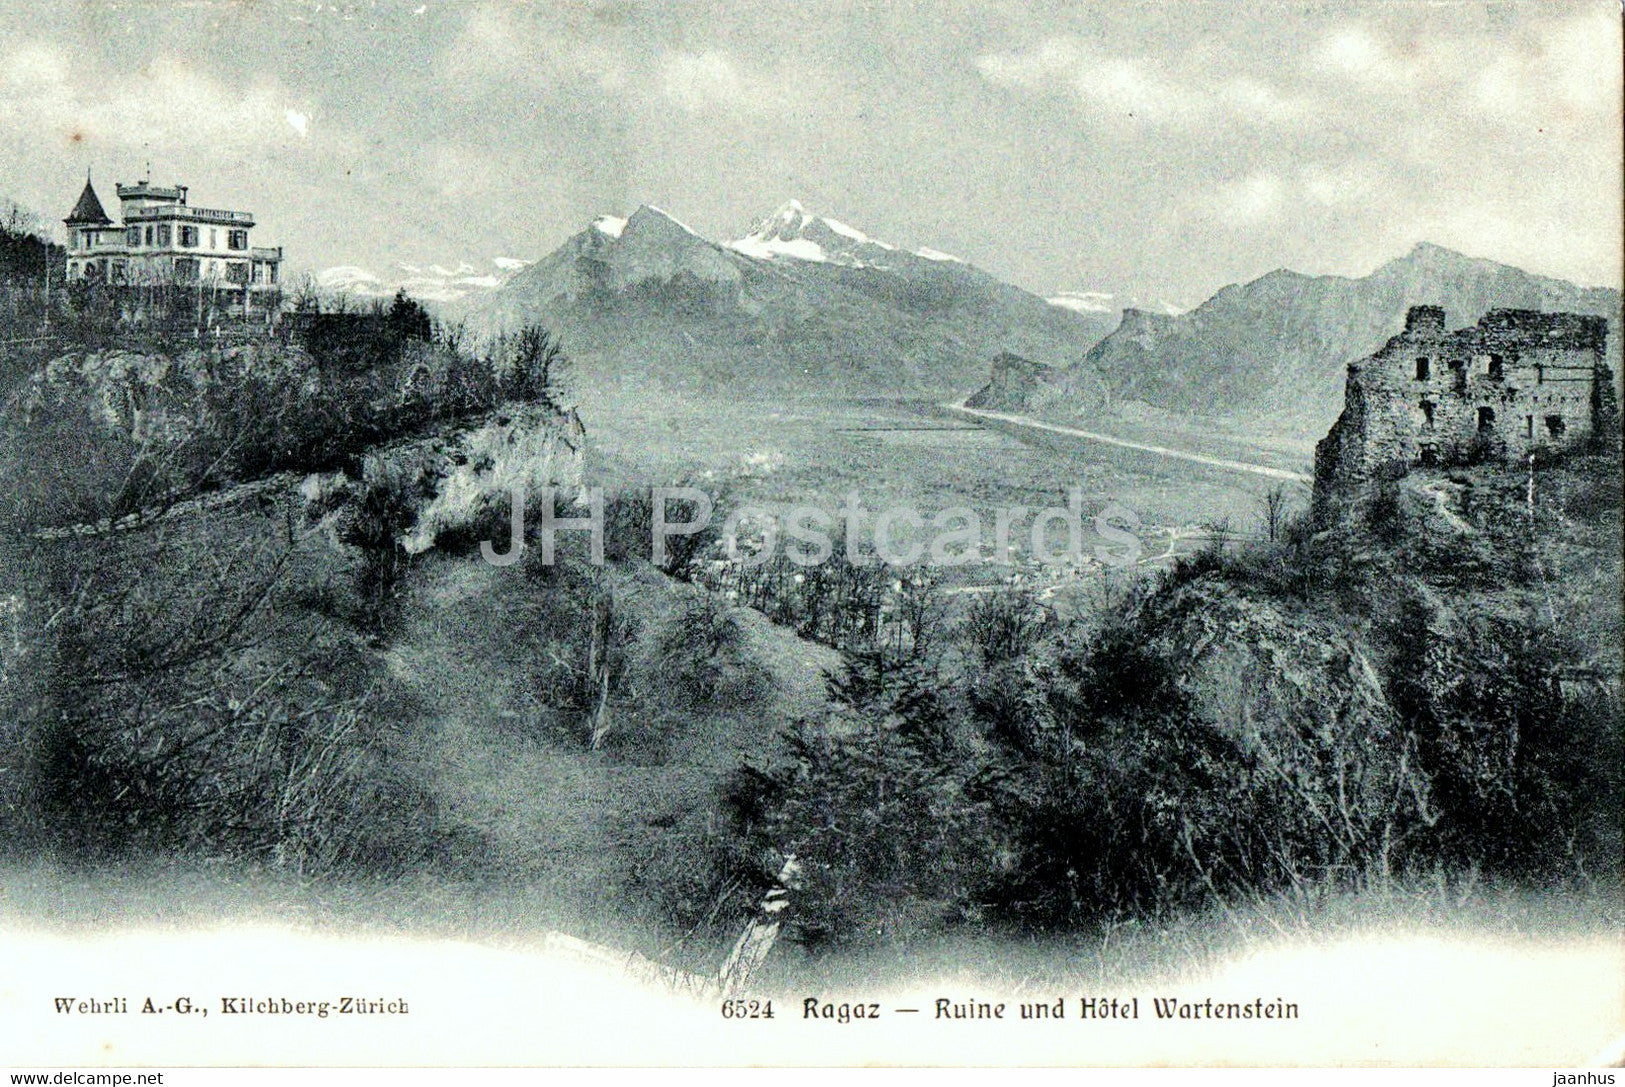 Ragaz - Ruine und Hotel Wartenstein - 6524 - old postcard - 1908 - Switzerland - used - JH Postcards